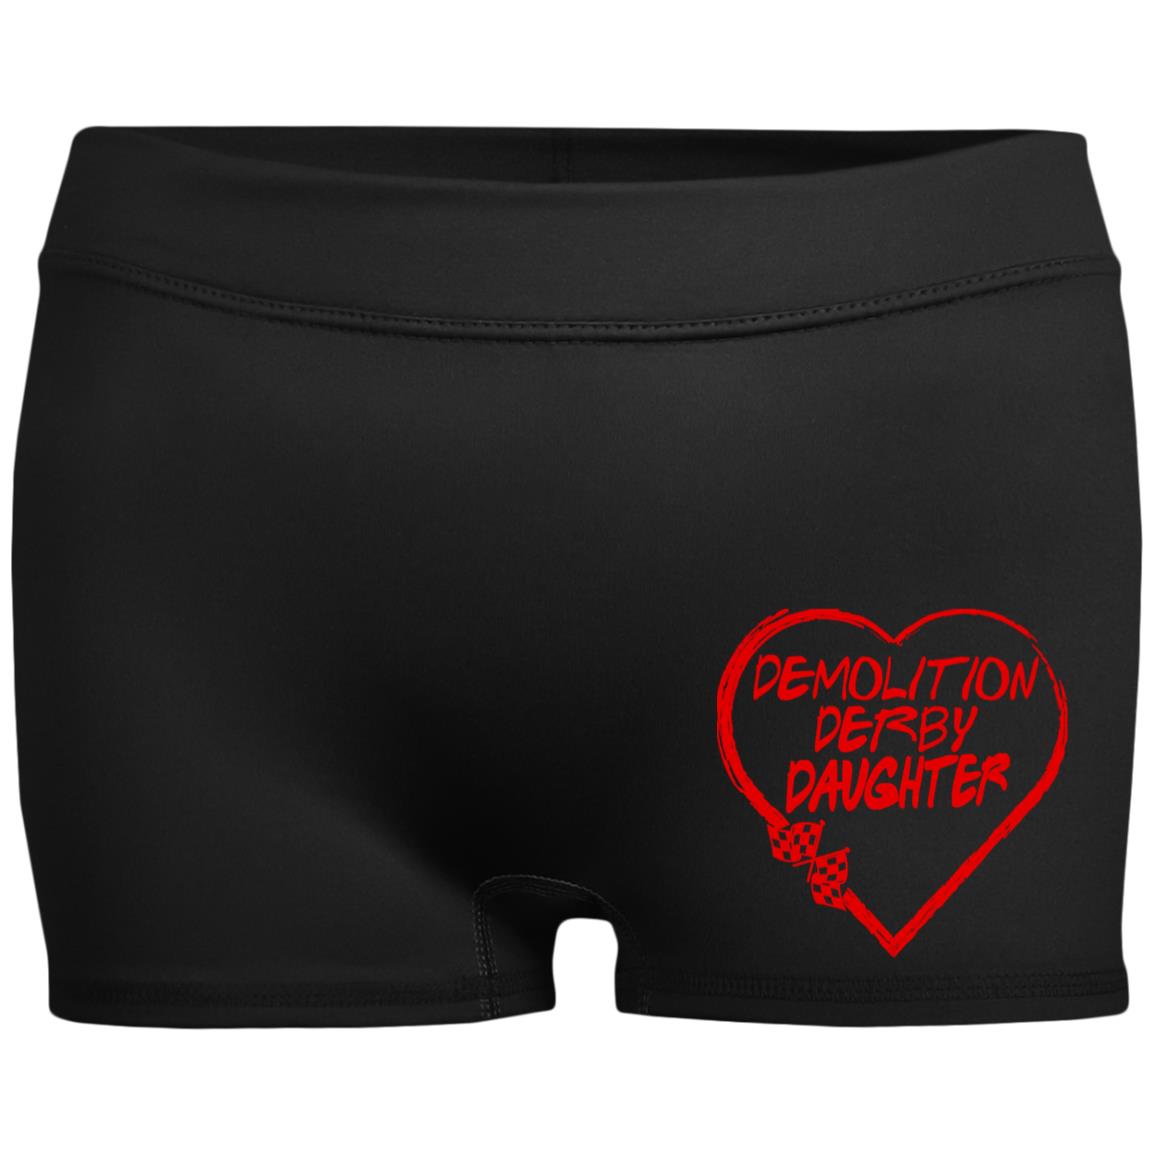 Demolition Derby Daughter Heart Ladies' Fitted Moisture-Wicking 2.5 inch Inseam Shorts